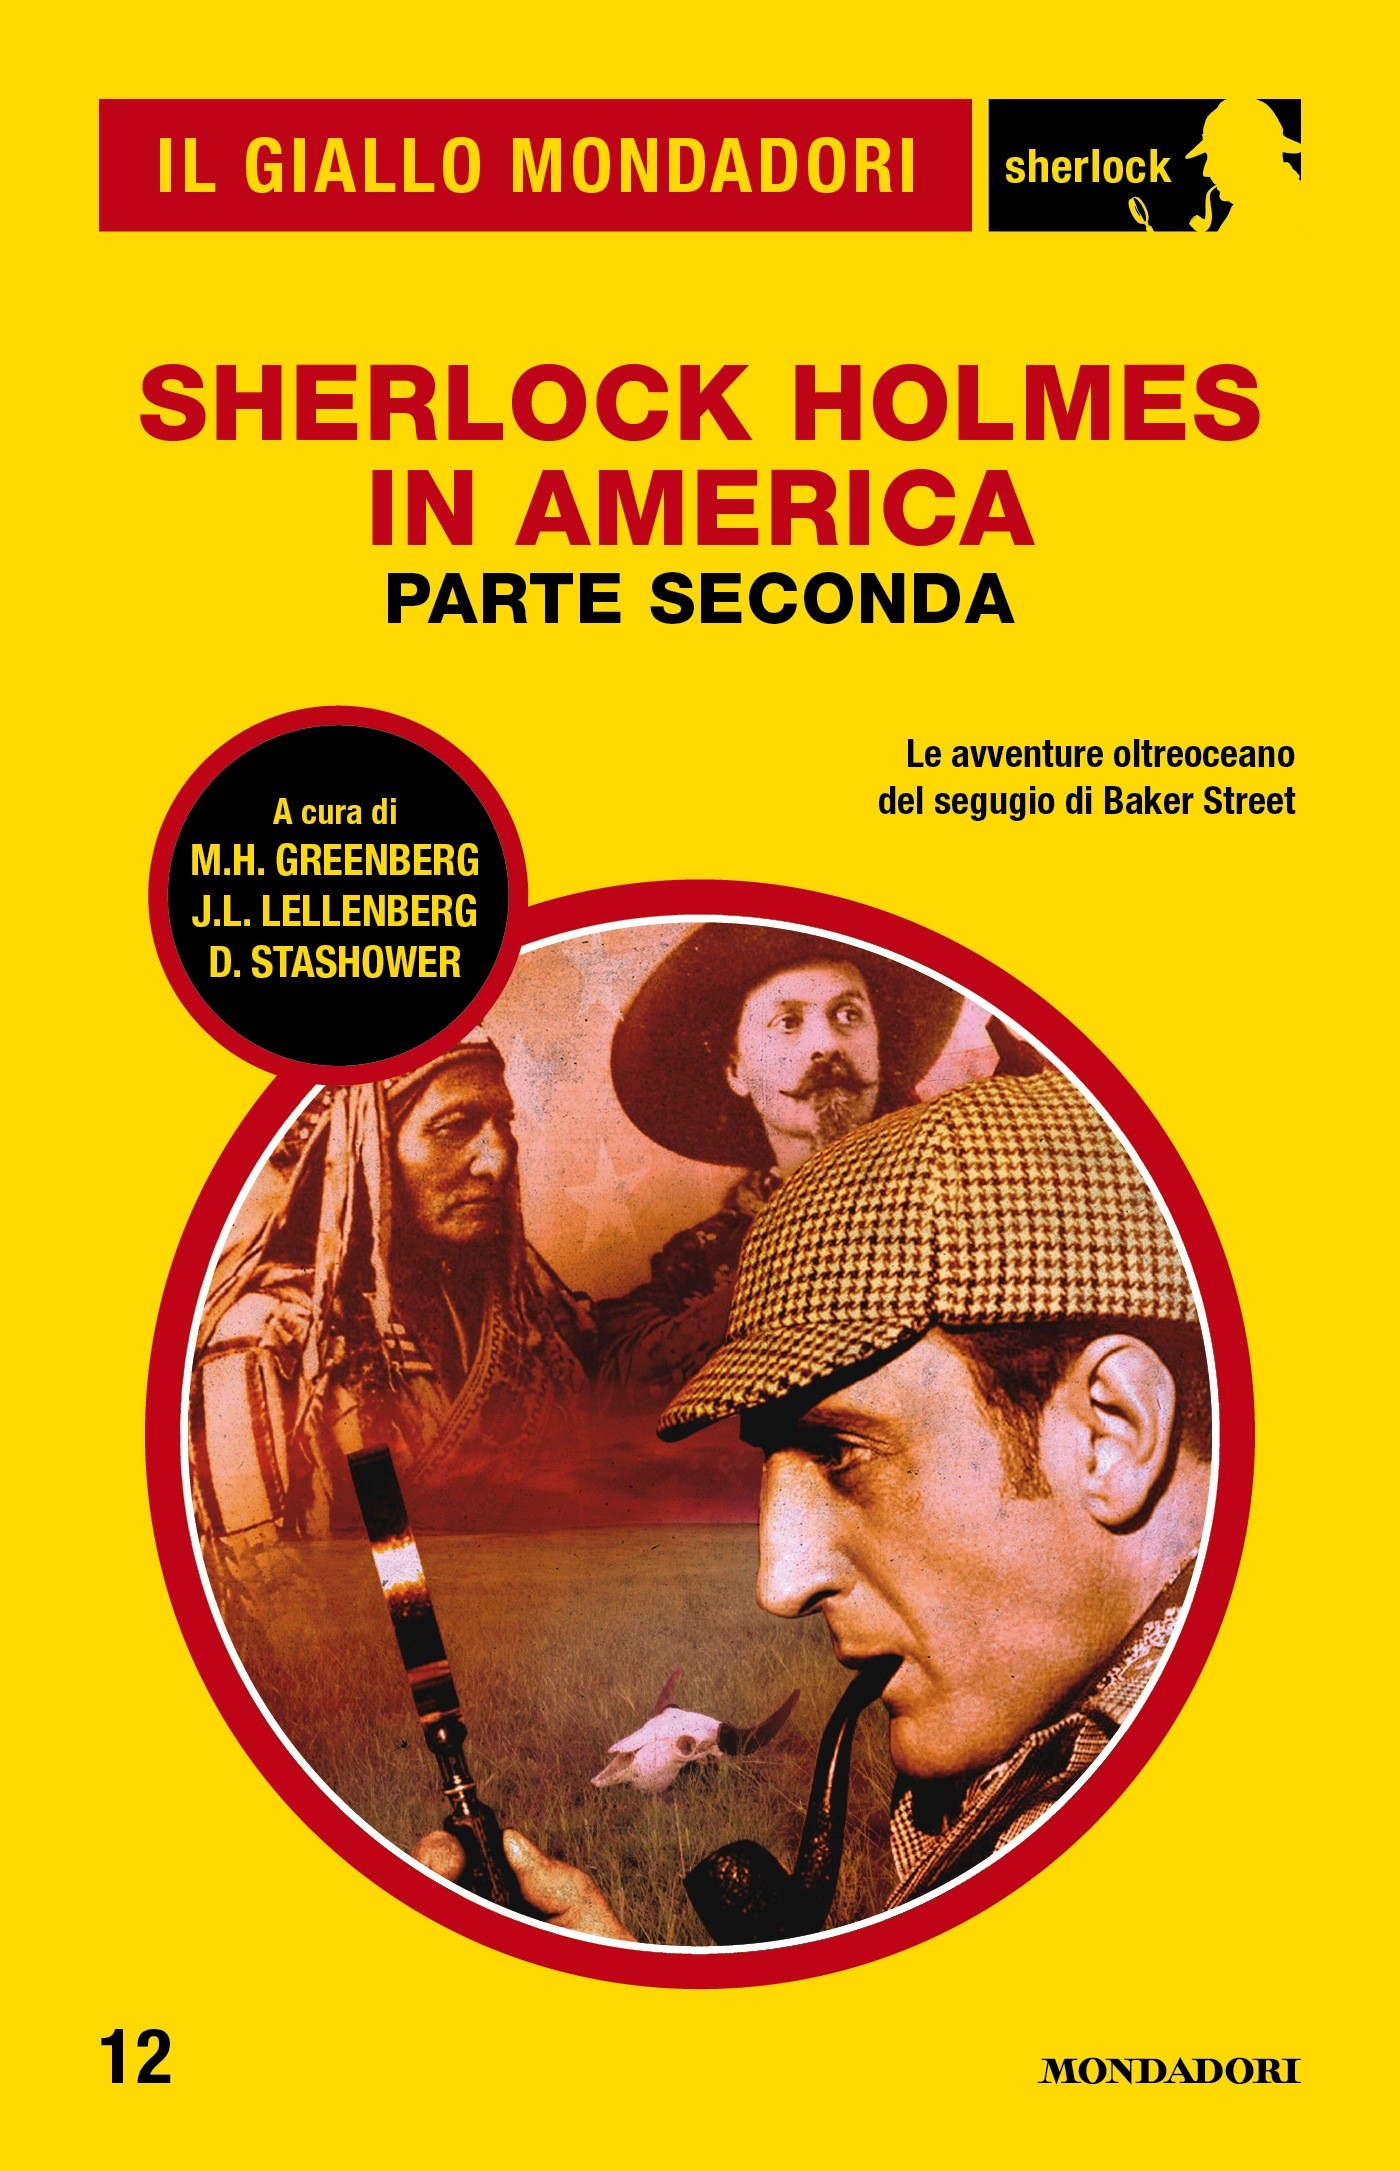 Sherlock Holmes in America - parte seconda (Il Giallo Mondadori Sherlock) - Librerie.coop